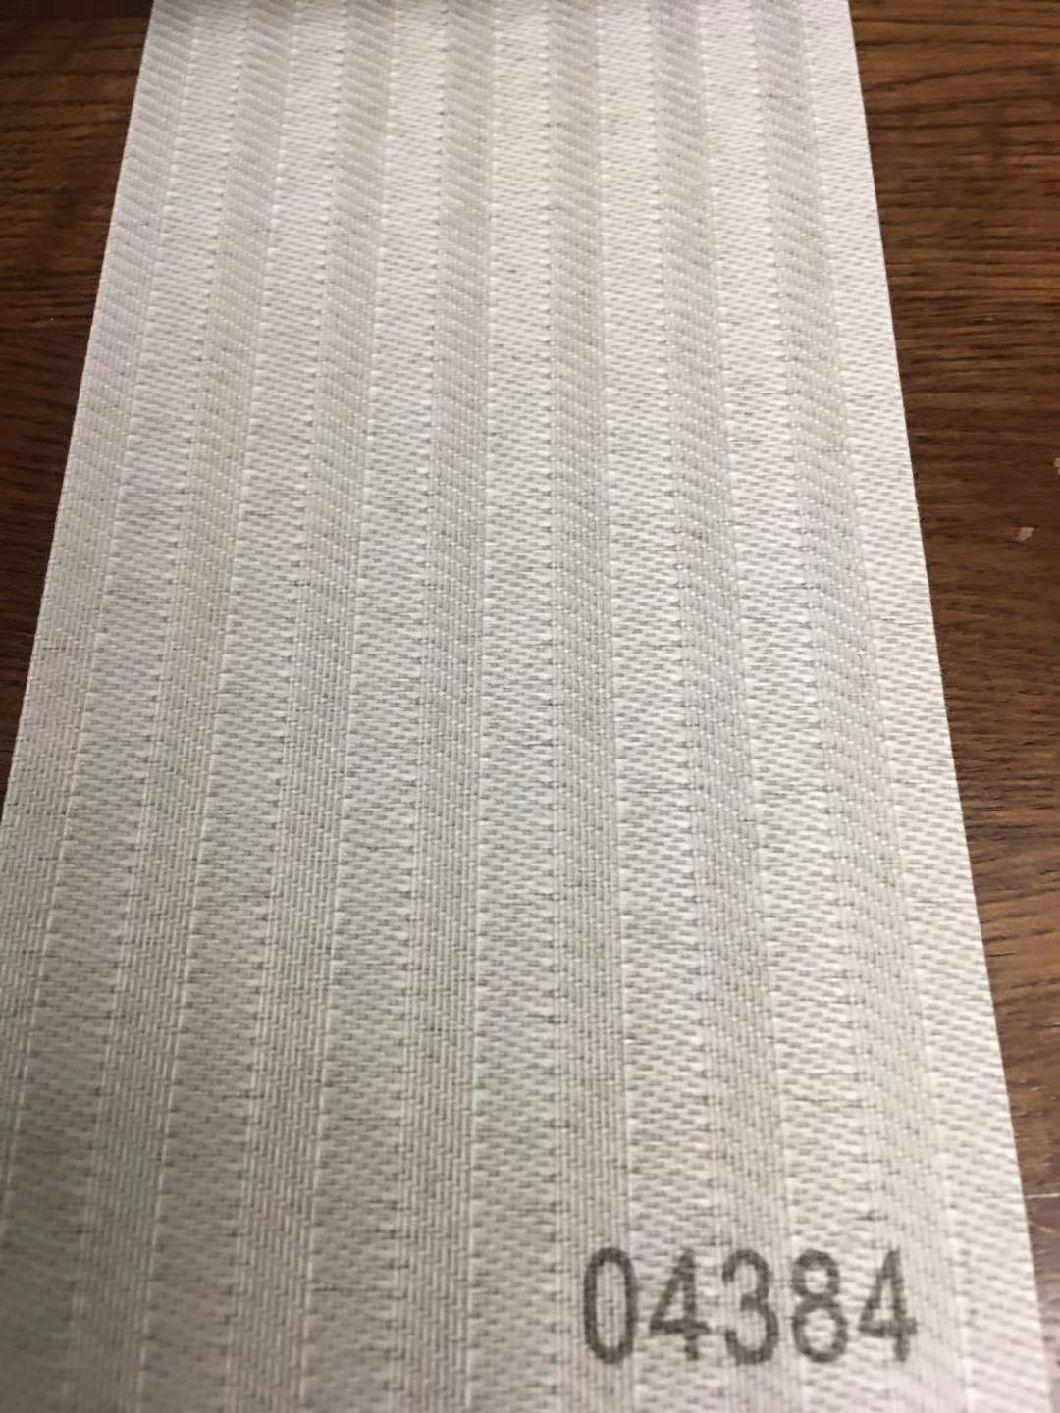 V3 Vertical Blinds Fabric